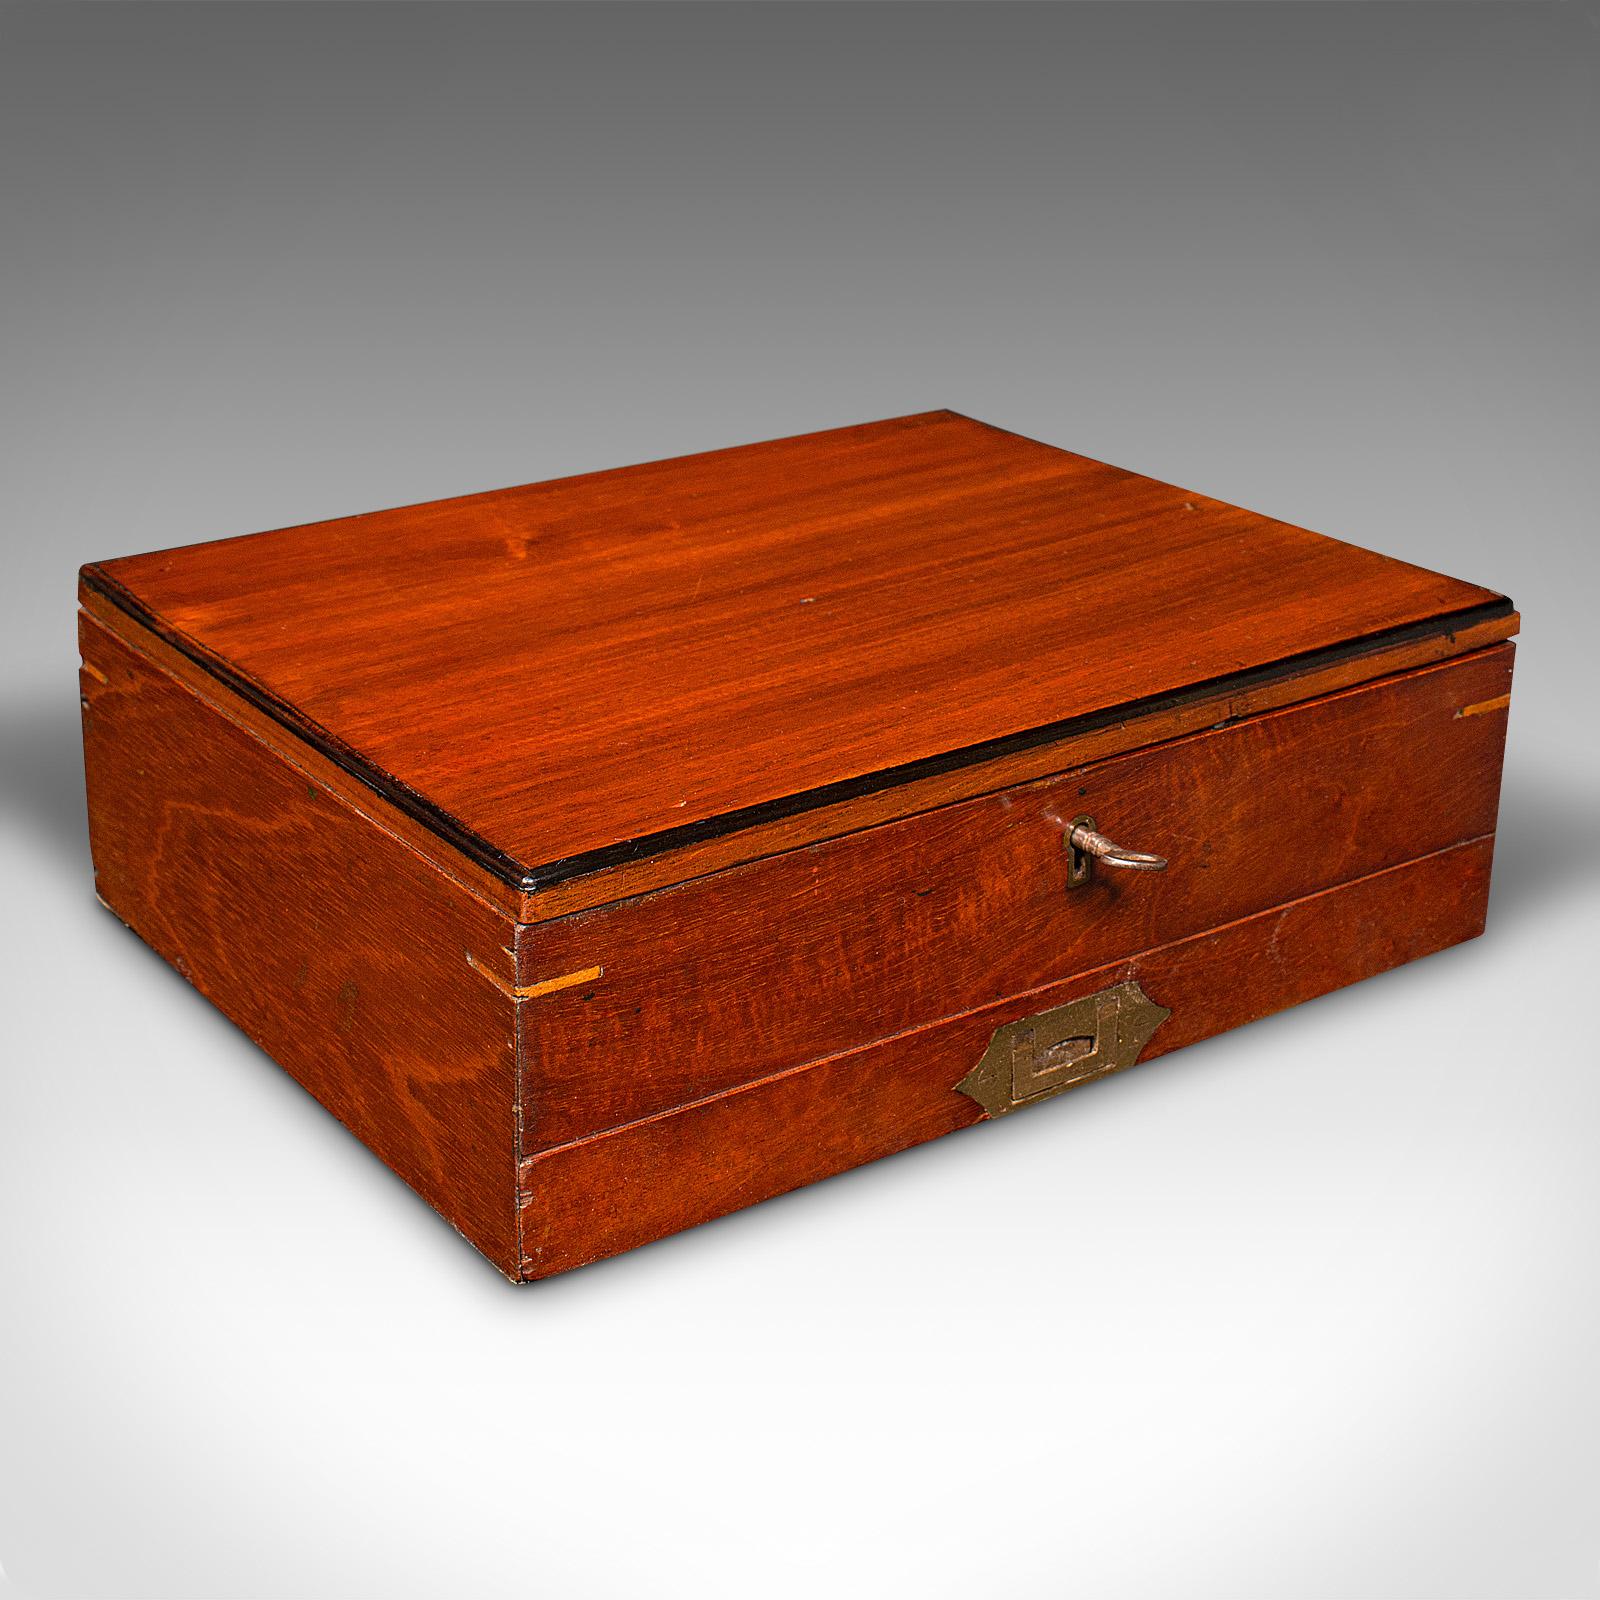 Dies ist eine antike Künstlerbox. Ein englischer Palettenkasten aus Nussbaum und Ebenholz von Winsor & Newton aus London, aus der späten viktorianischen Zeit, um 1890.

Attraktiver viktorianischer Künstlerkasten von einem renommierten